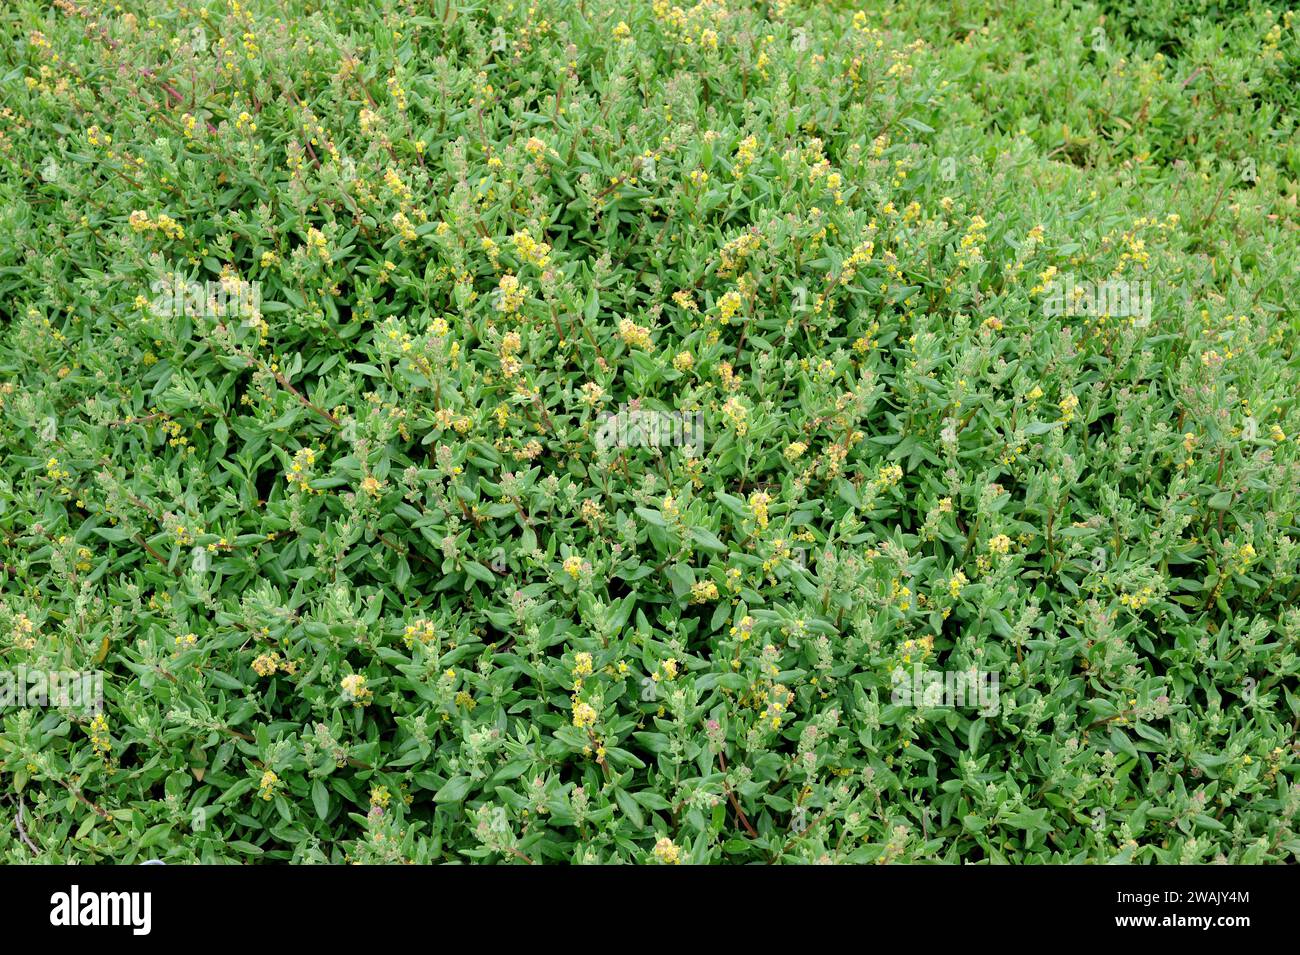 Dune spinach or sea spinach (Tetragonia decumbens) is an edible shrub ...